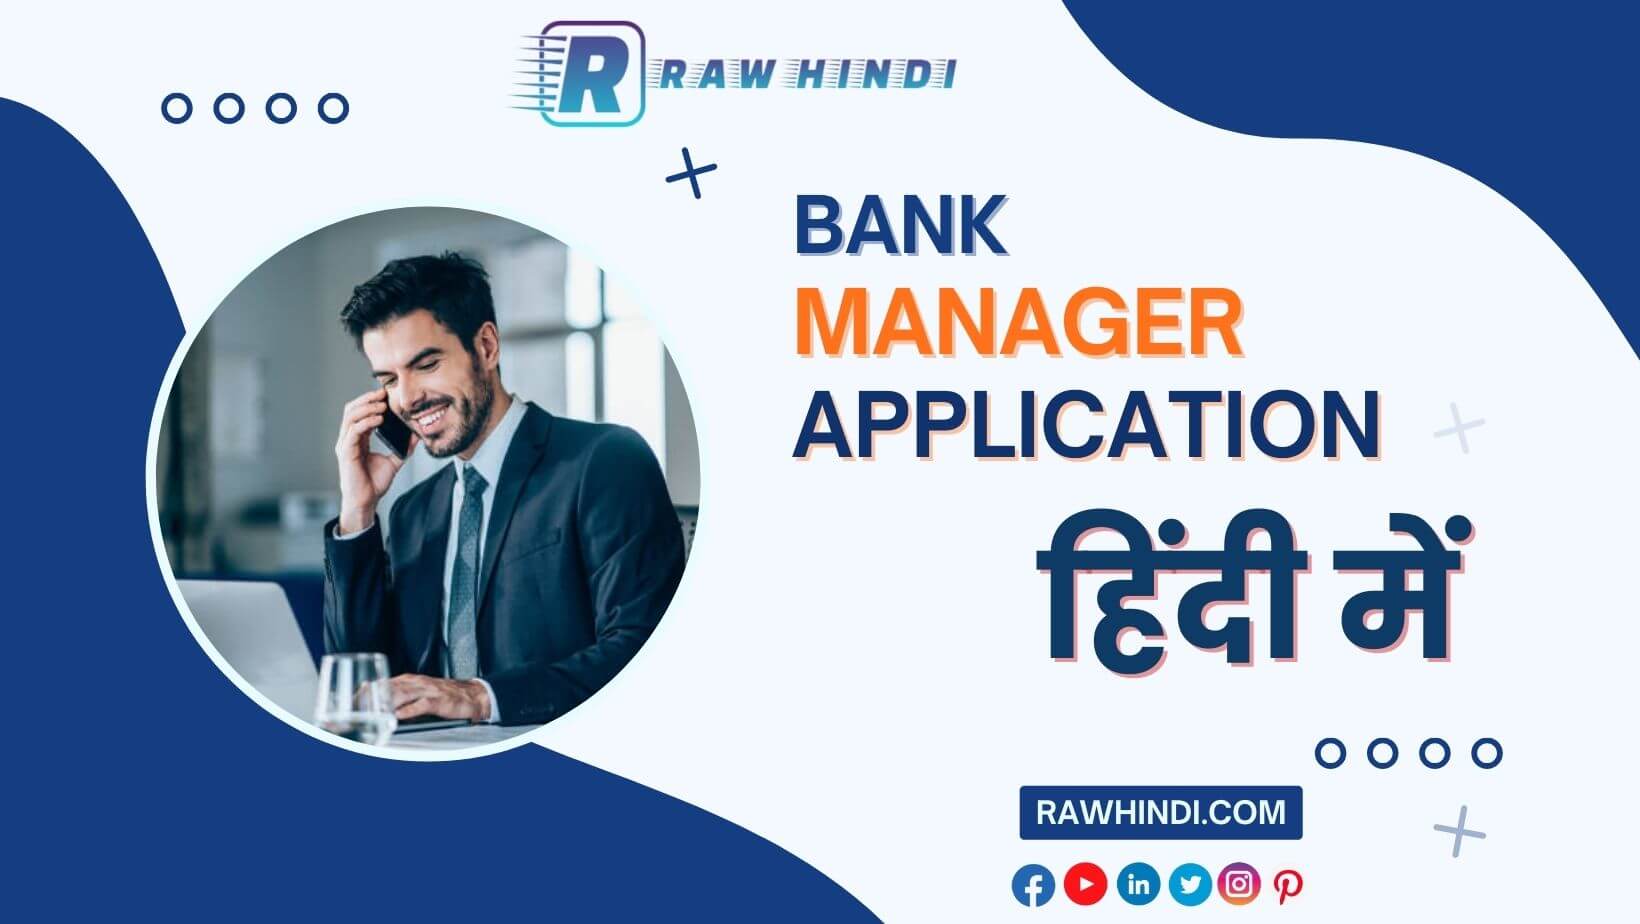 Application For Bank Manager in Hindi बैंक मैनेजर को एप्लीकेशन हिंदी में लिखना सीखे